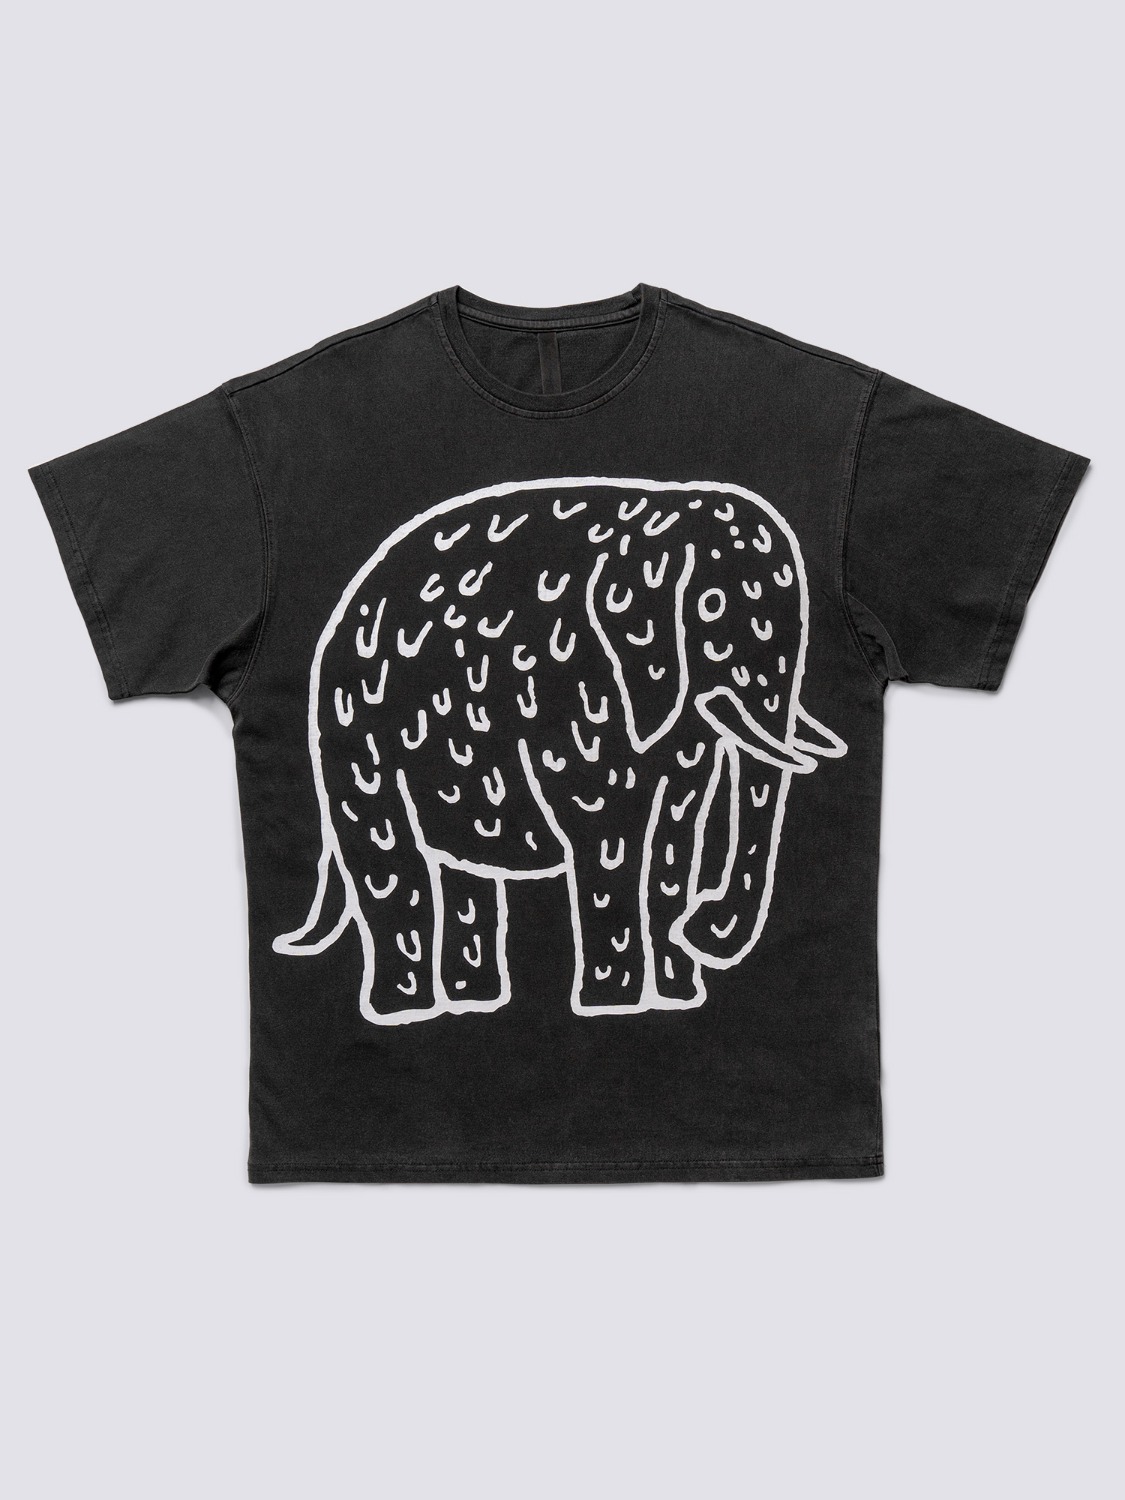 CLOTHING눈물을 흘리는 동물 티셔츠: 코끼리